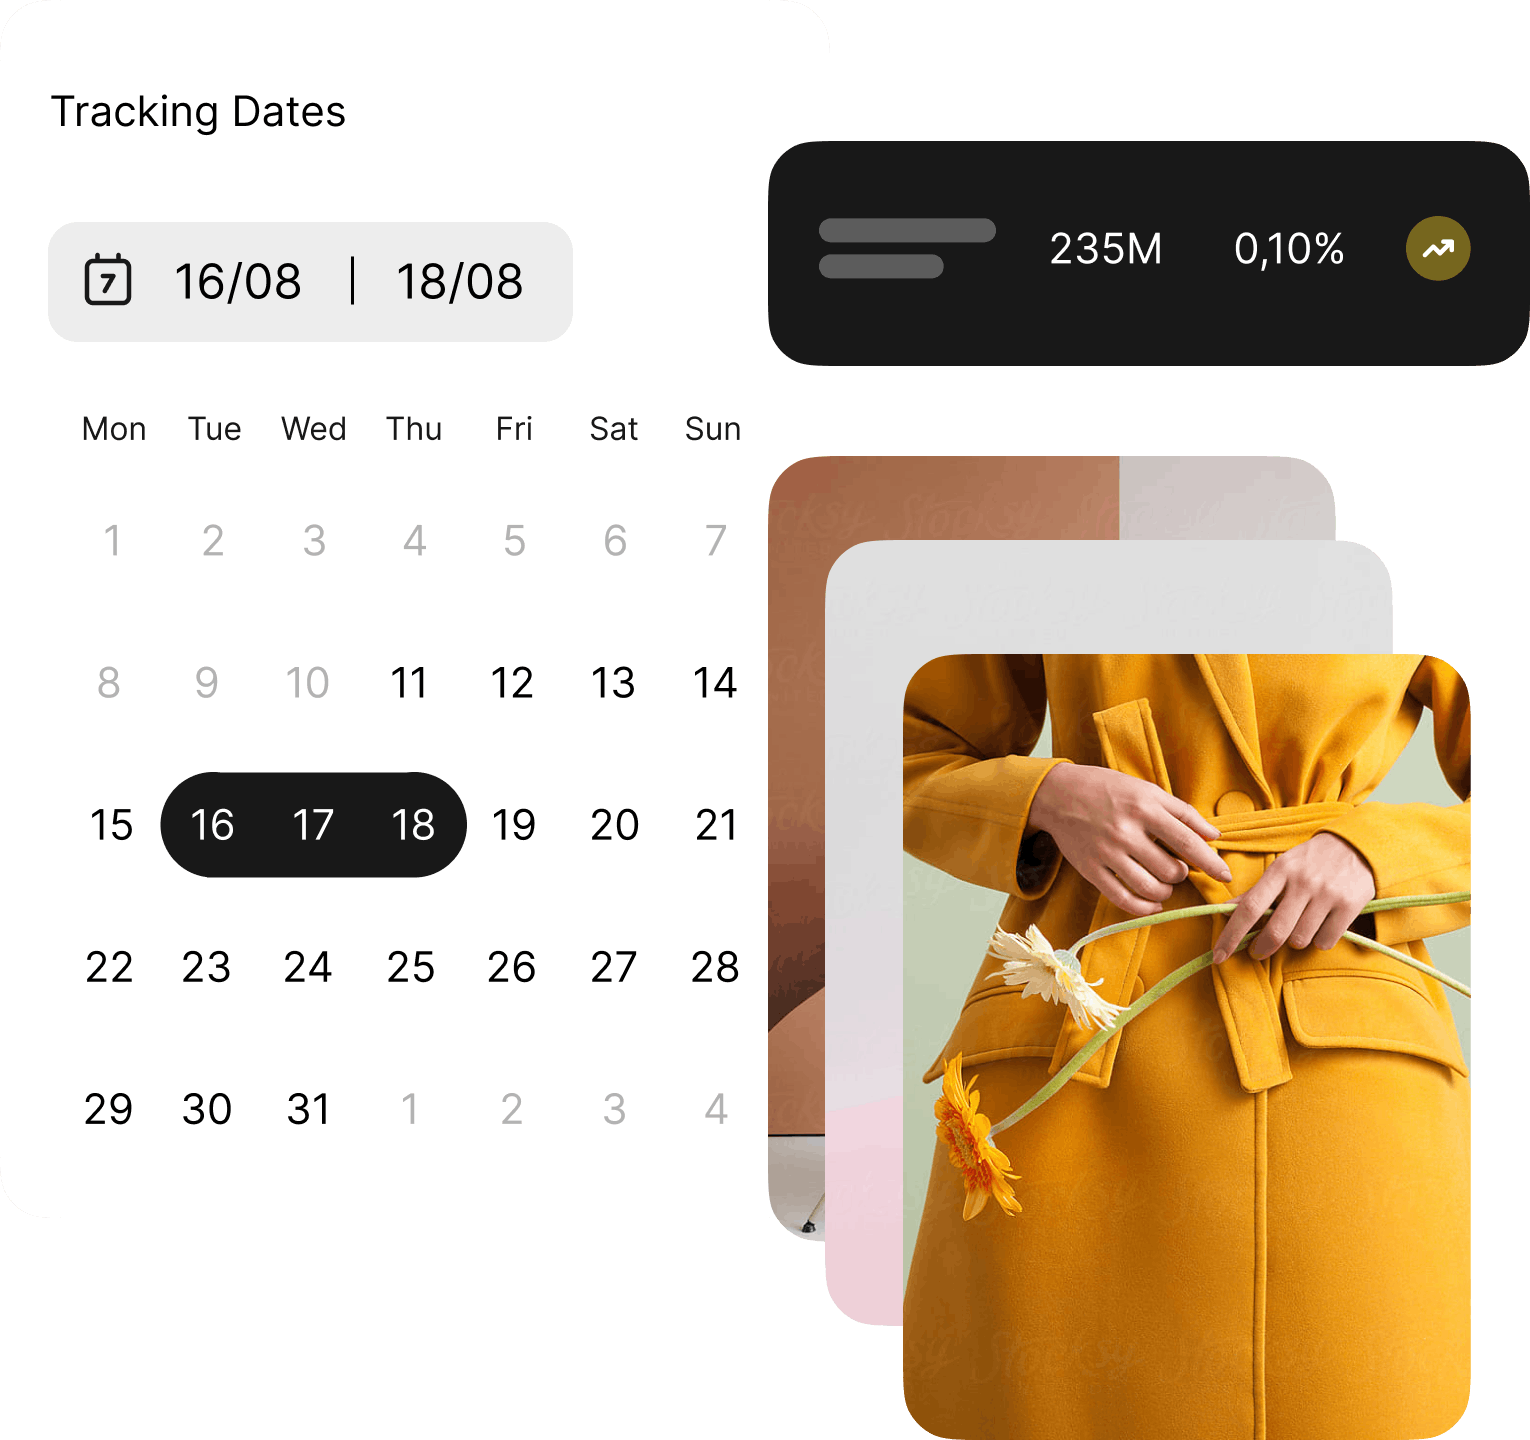 A calendar with data